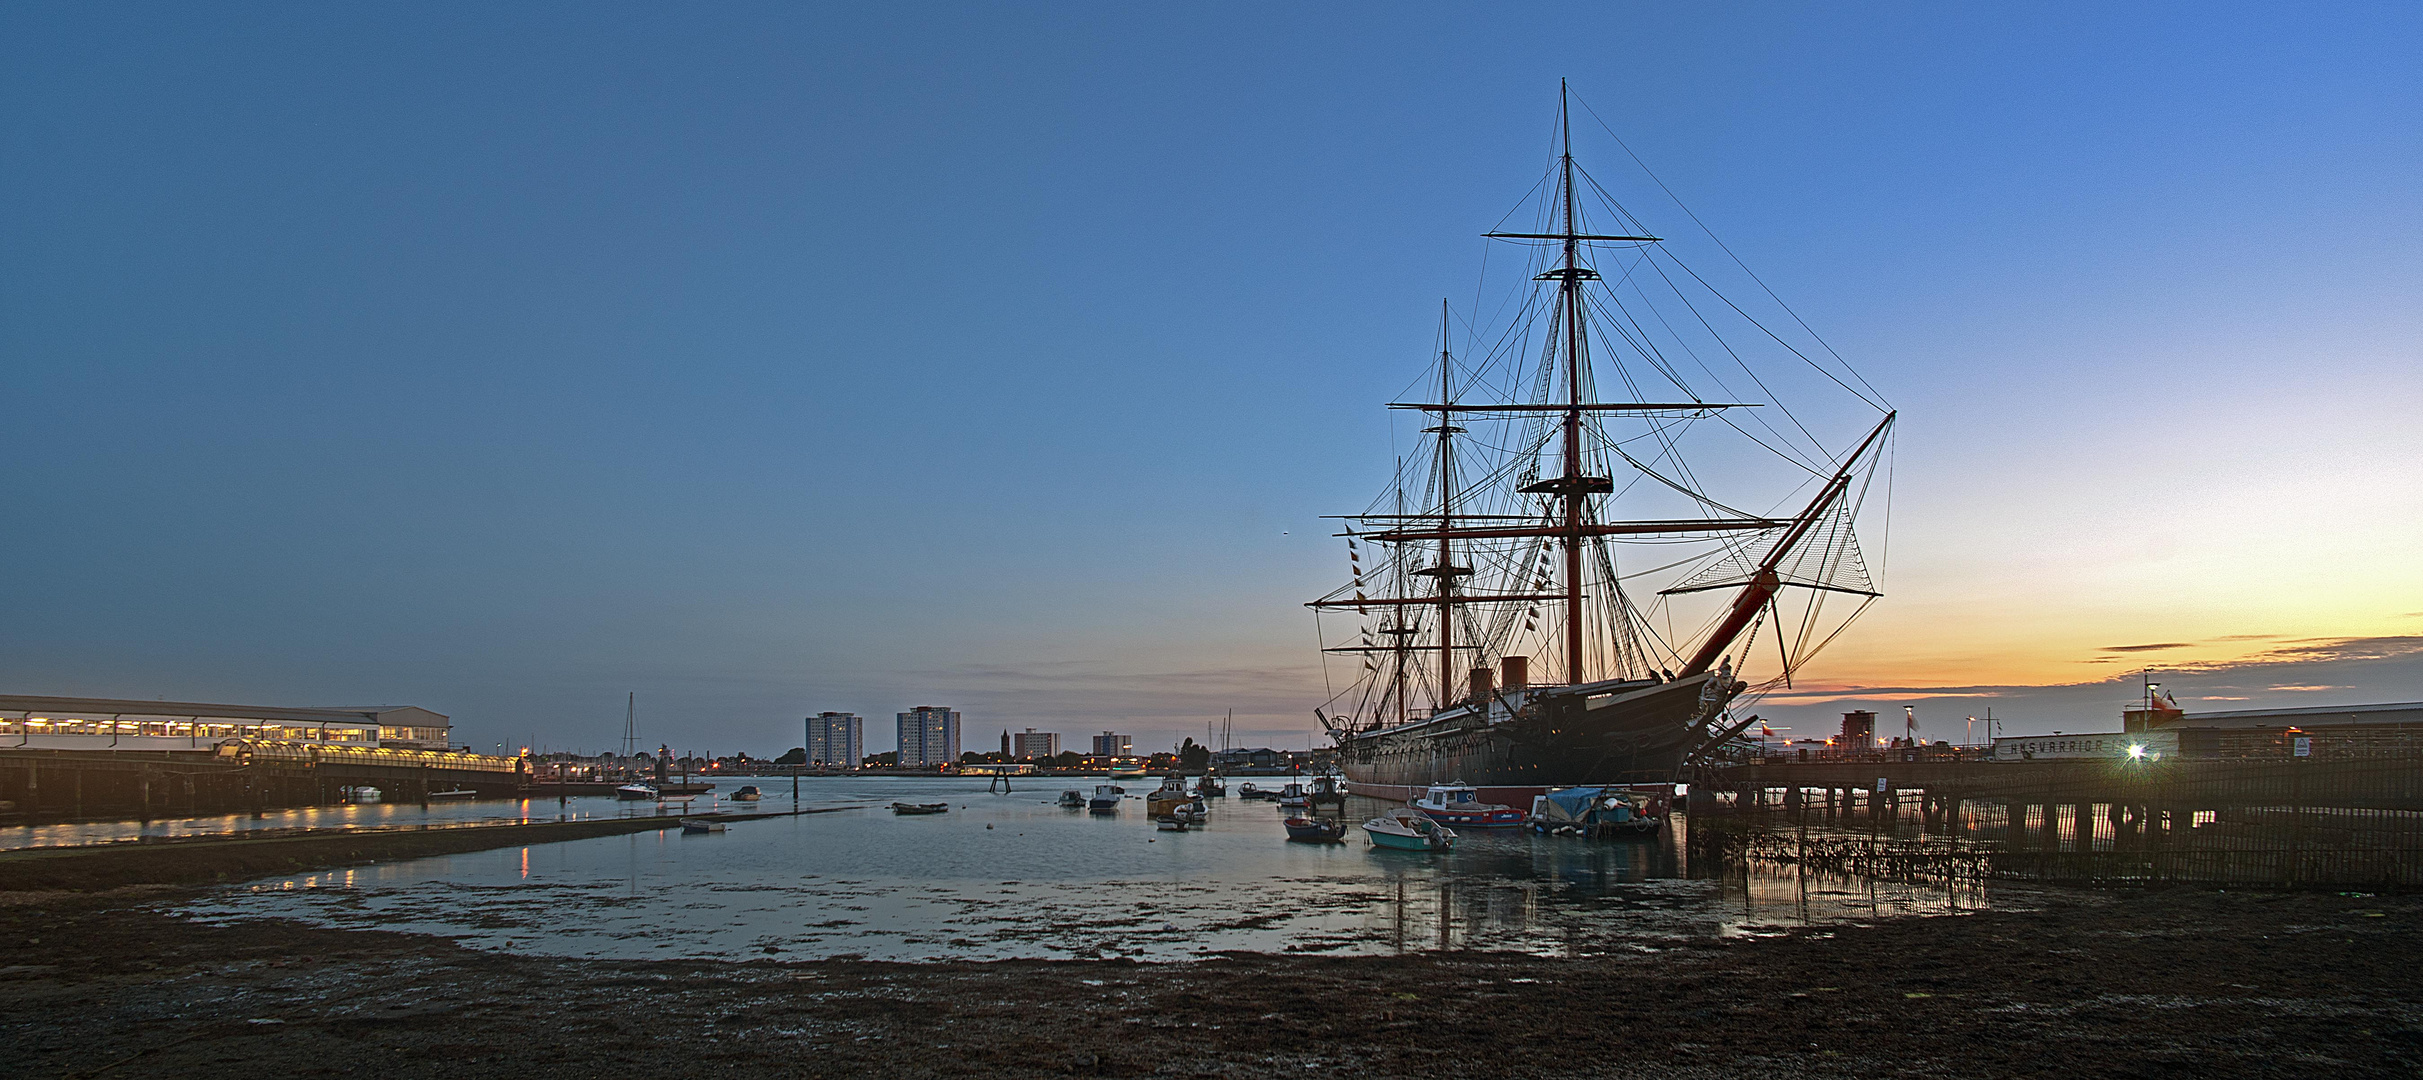 HMS WARRIOR in Portsmouth